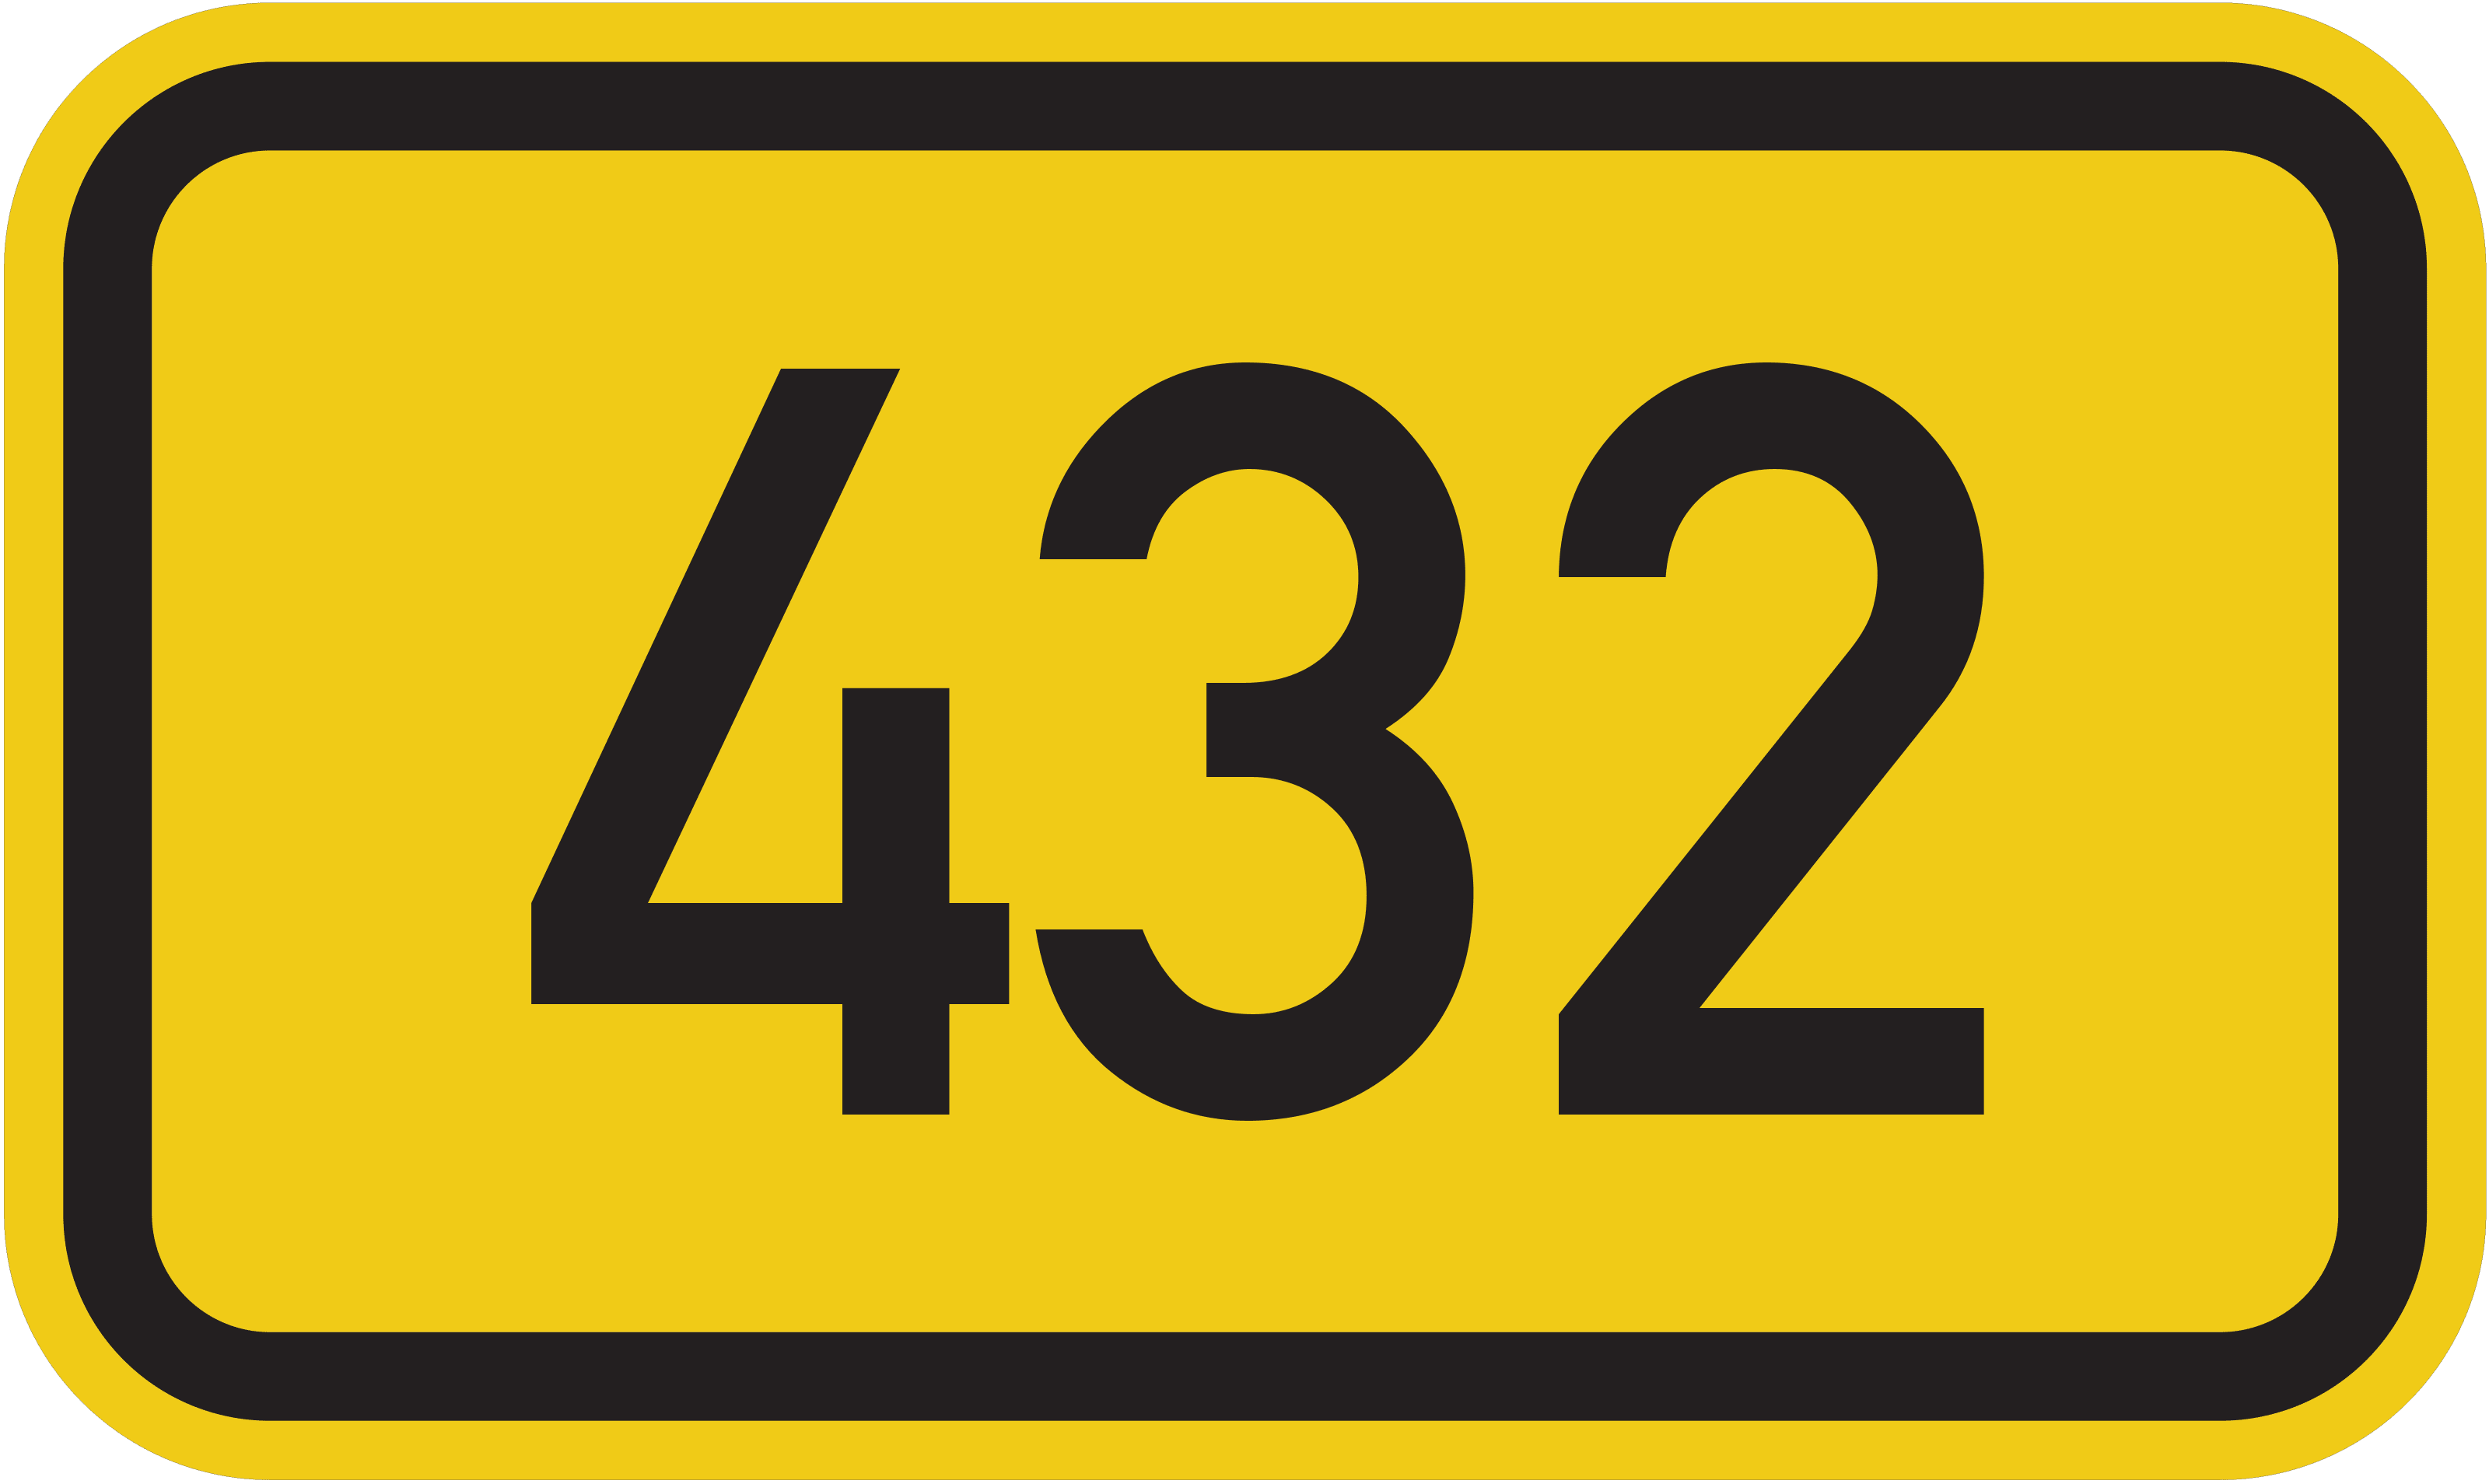 Bundesstraße B 432